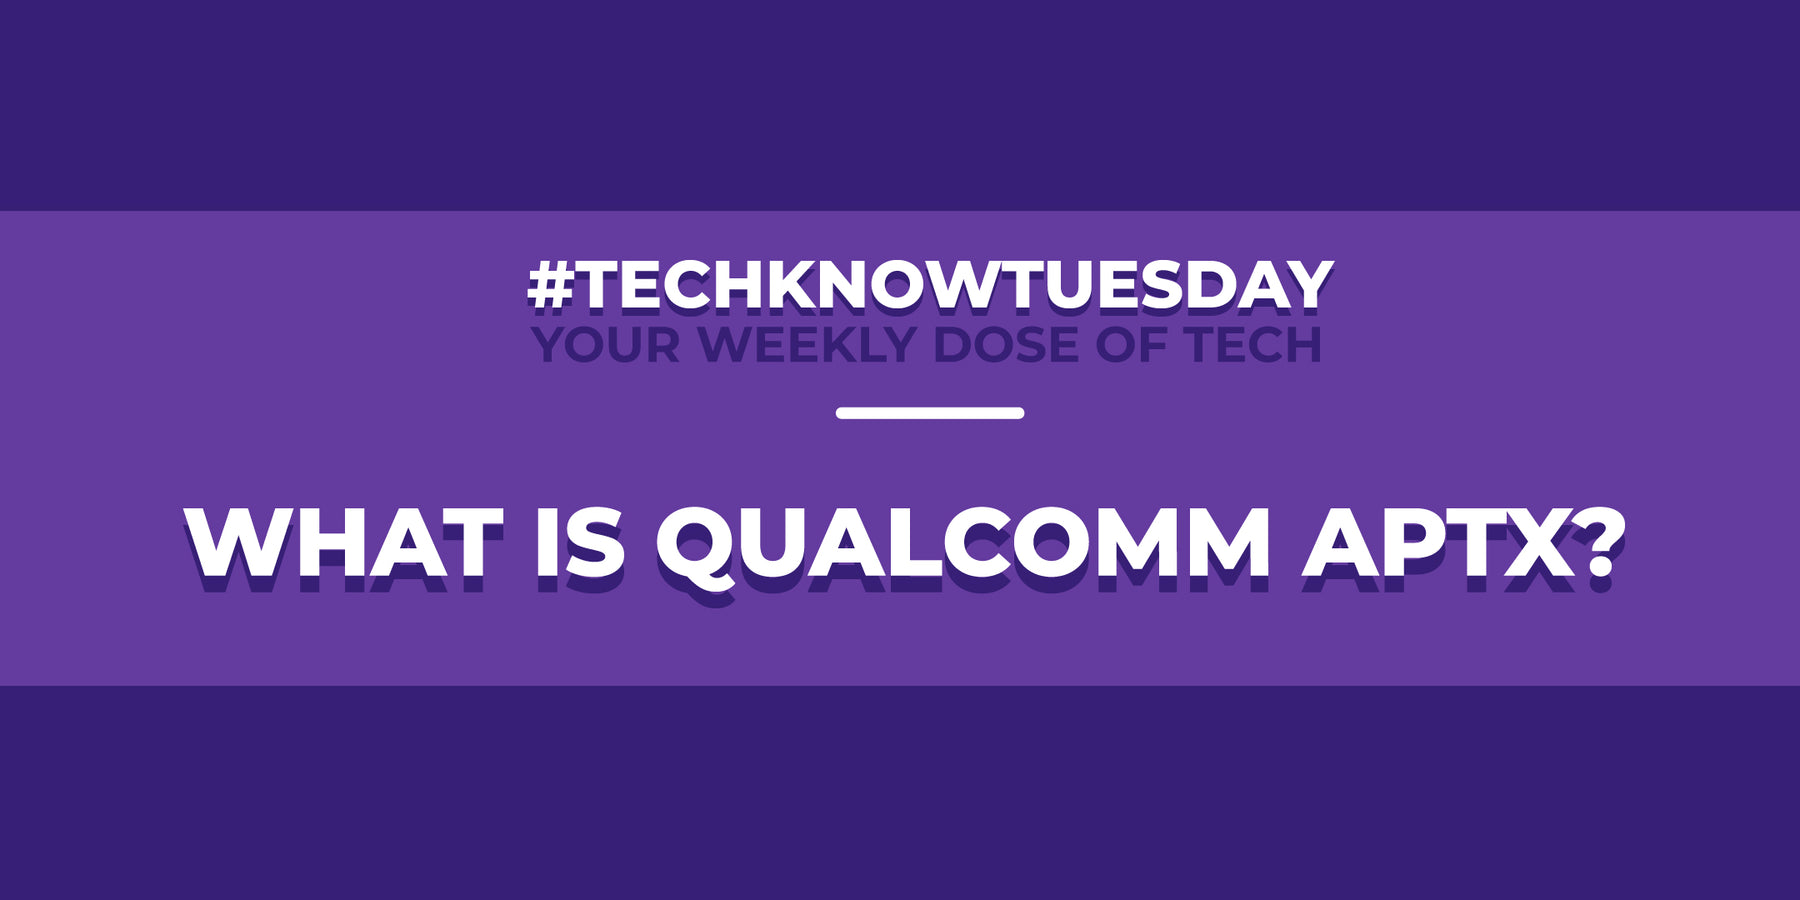 What is Qualcomm aptX?